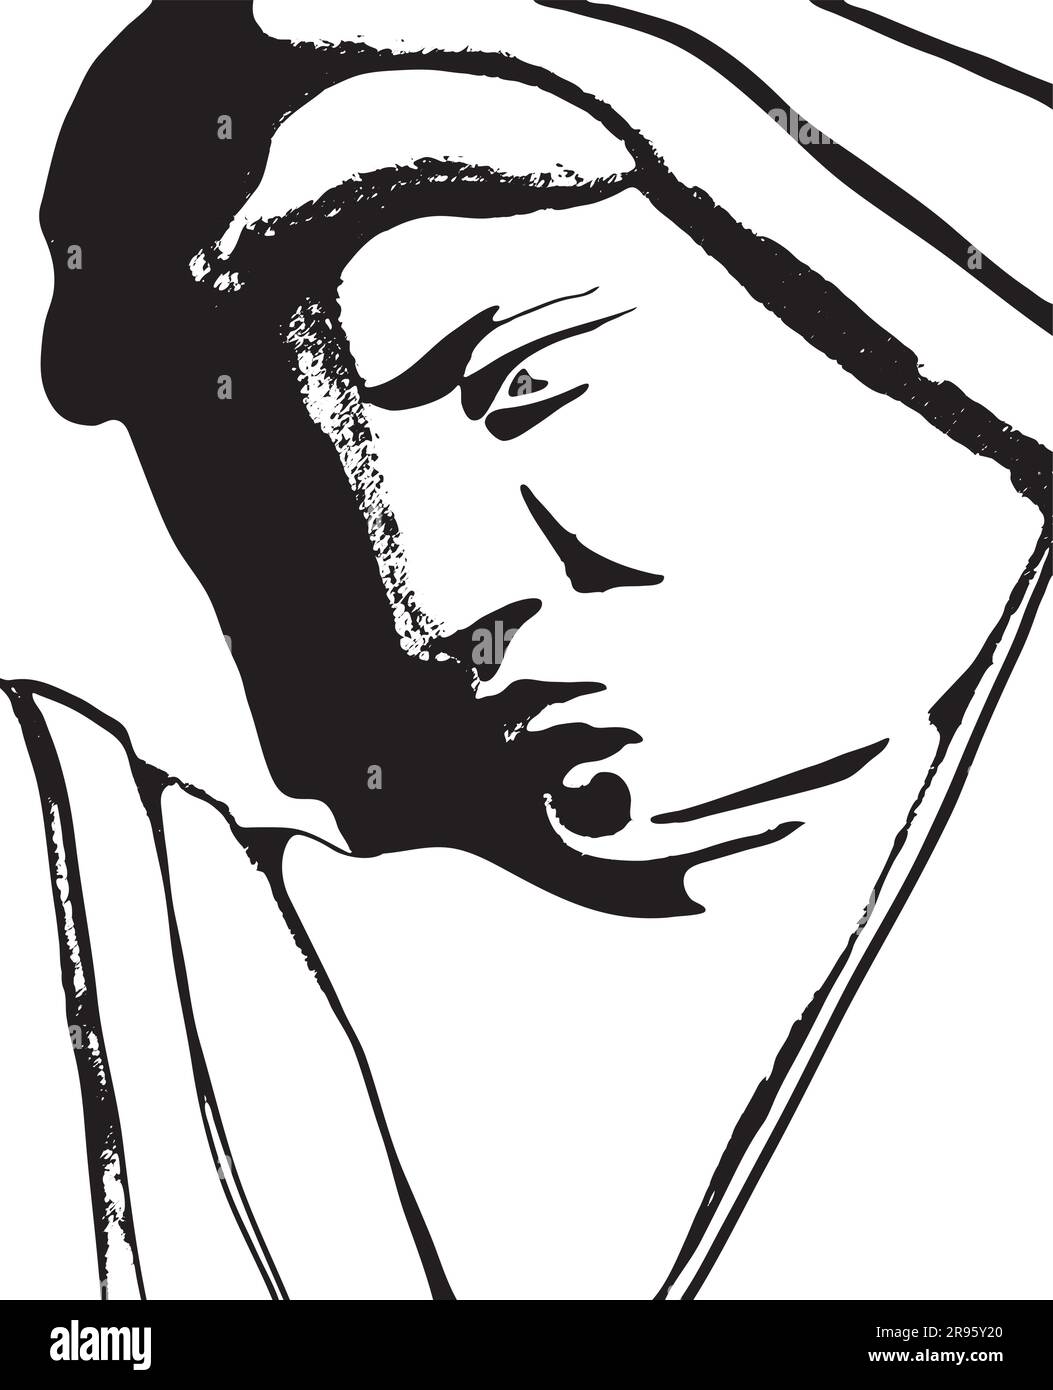 Perfil de la cara femenina - Bajo-relieve etéreo del perfil de una mujer serena velada en el neoclásico Parco del Ninfeo de Roma Ilustración del Vector